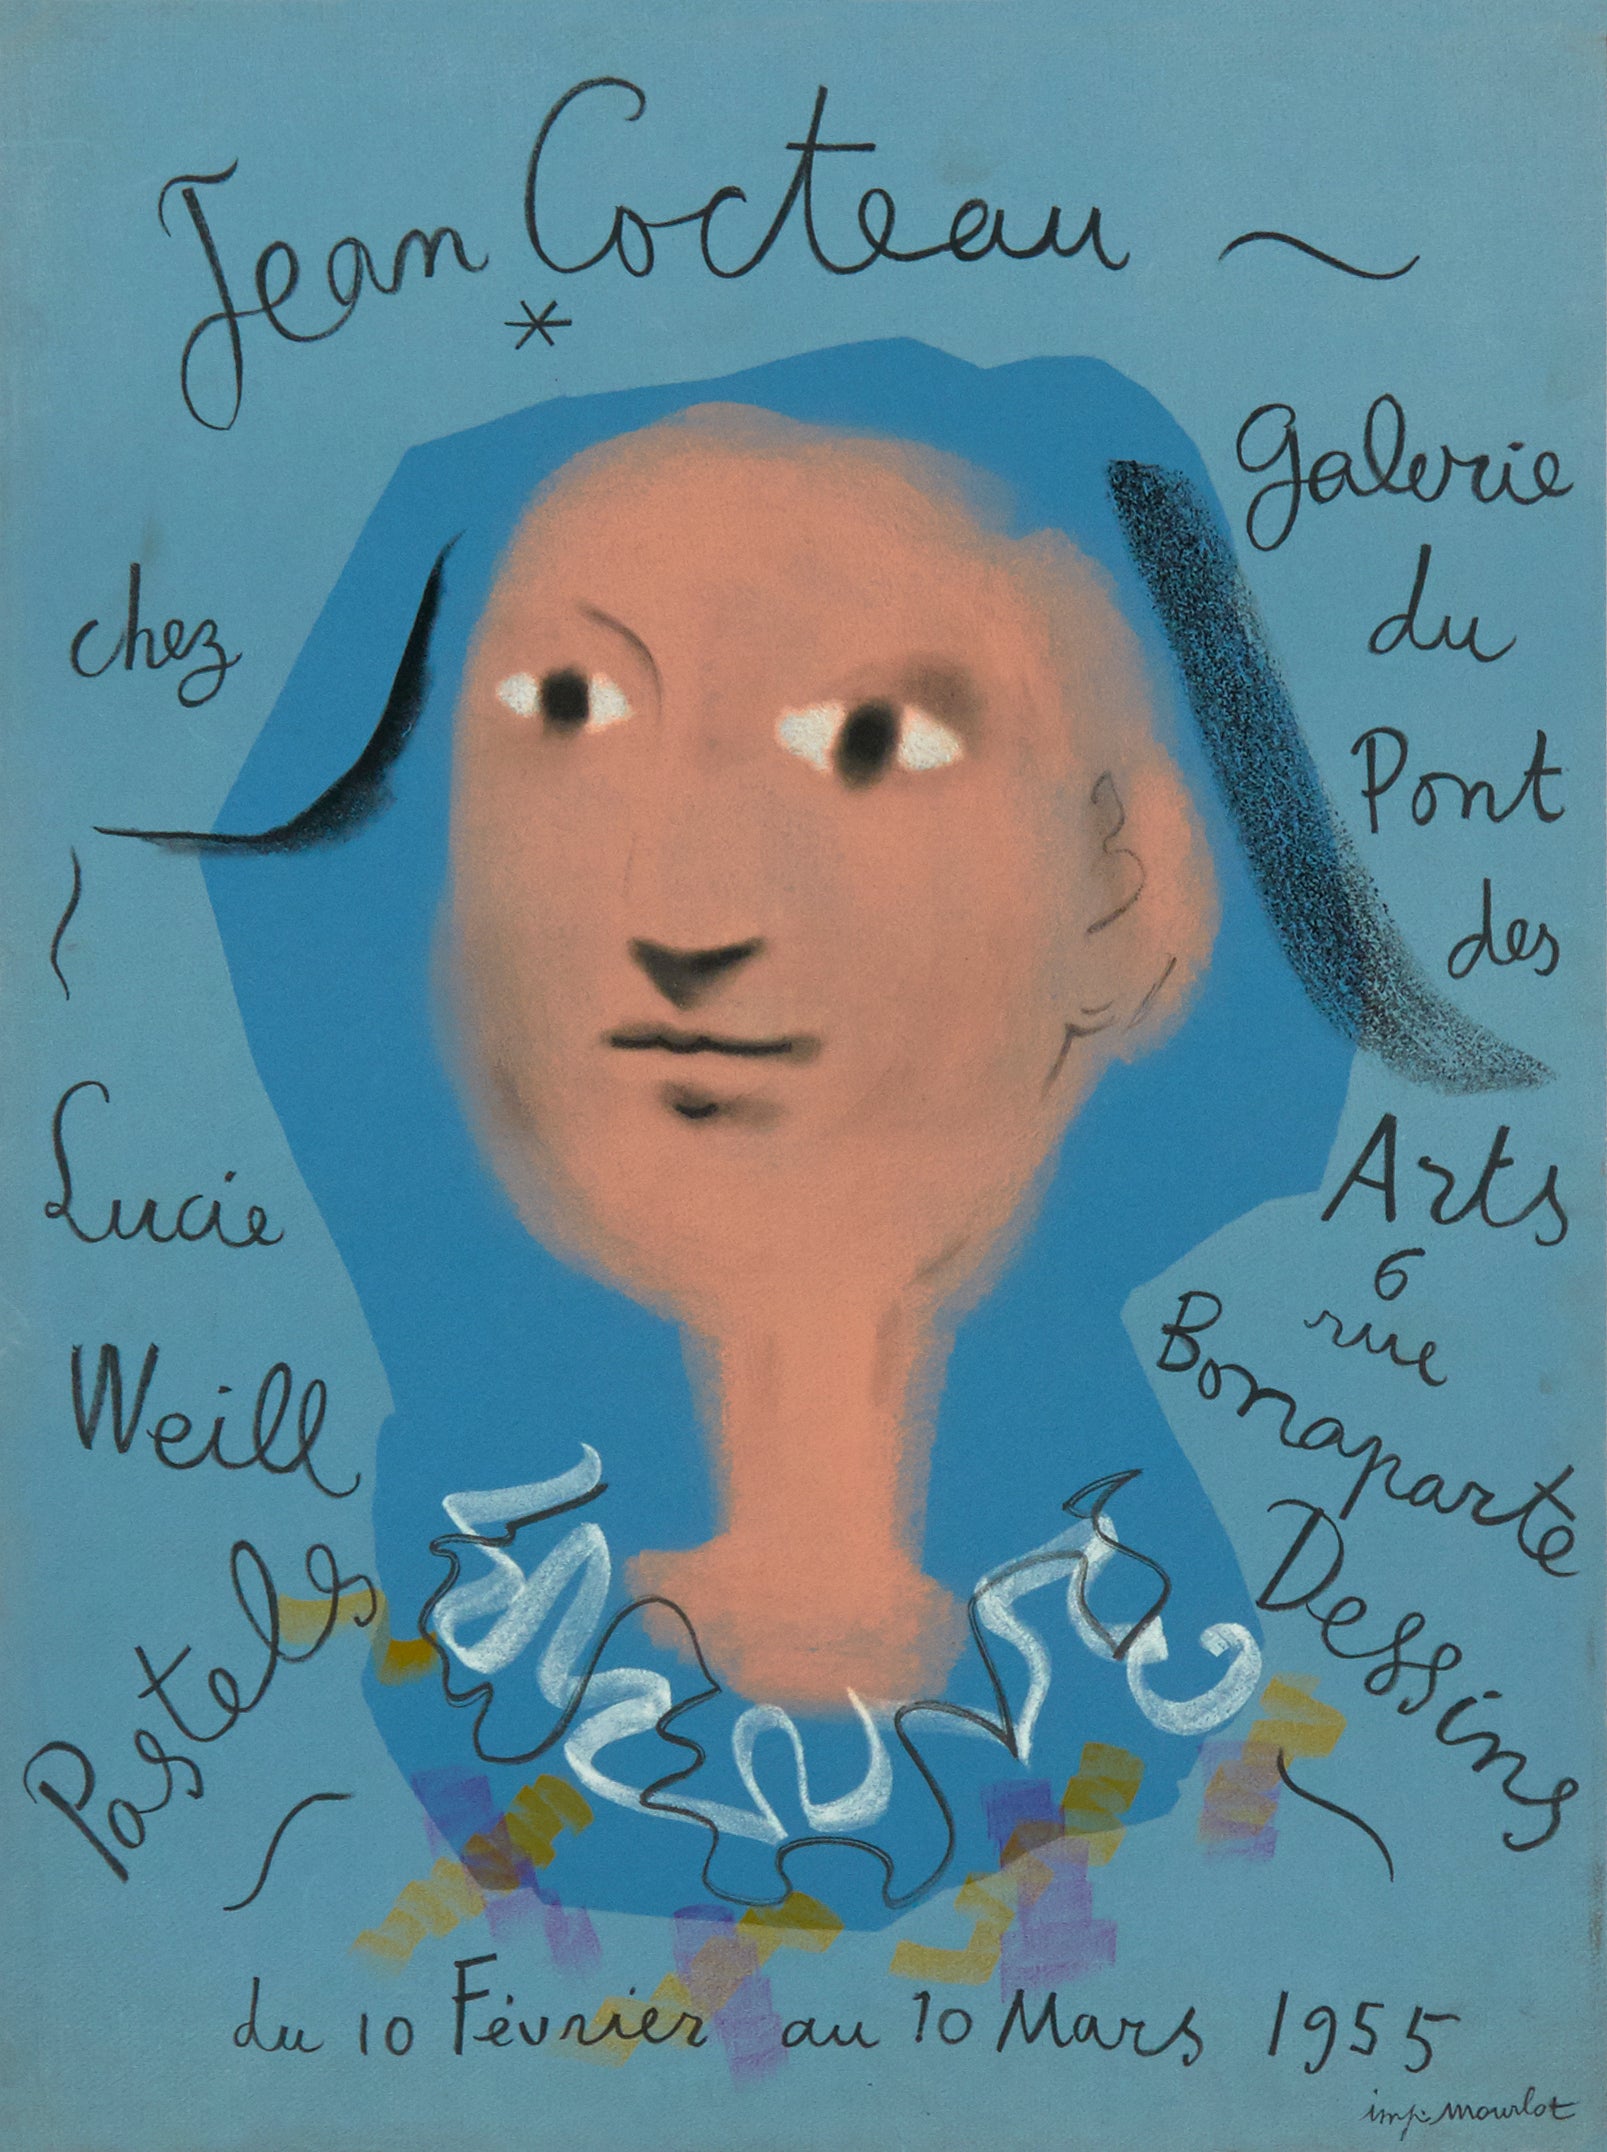 Pastels, Dessins, Galerie du Pont des Arts by Jean Cocteau, 1955 - Mourlot Editions - Fine_Art - Poster - Lithograph - Wall Art - Vintage - Prints - Original